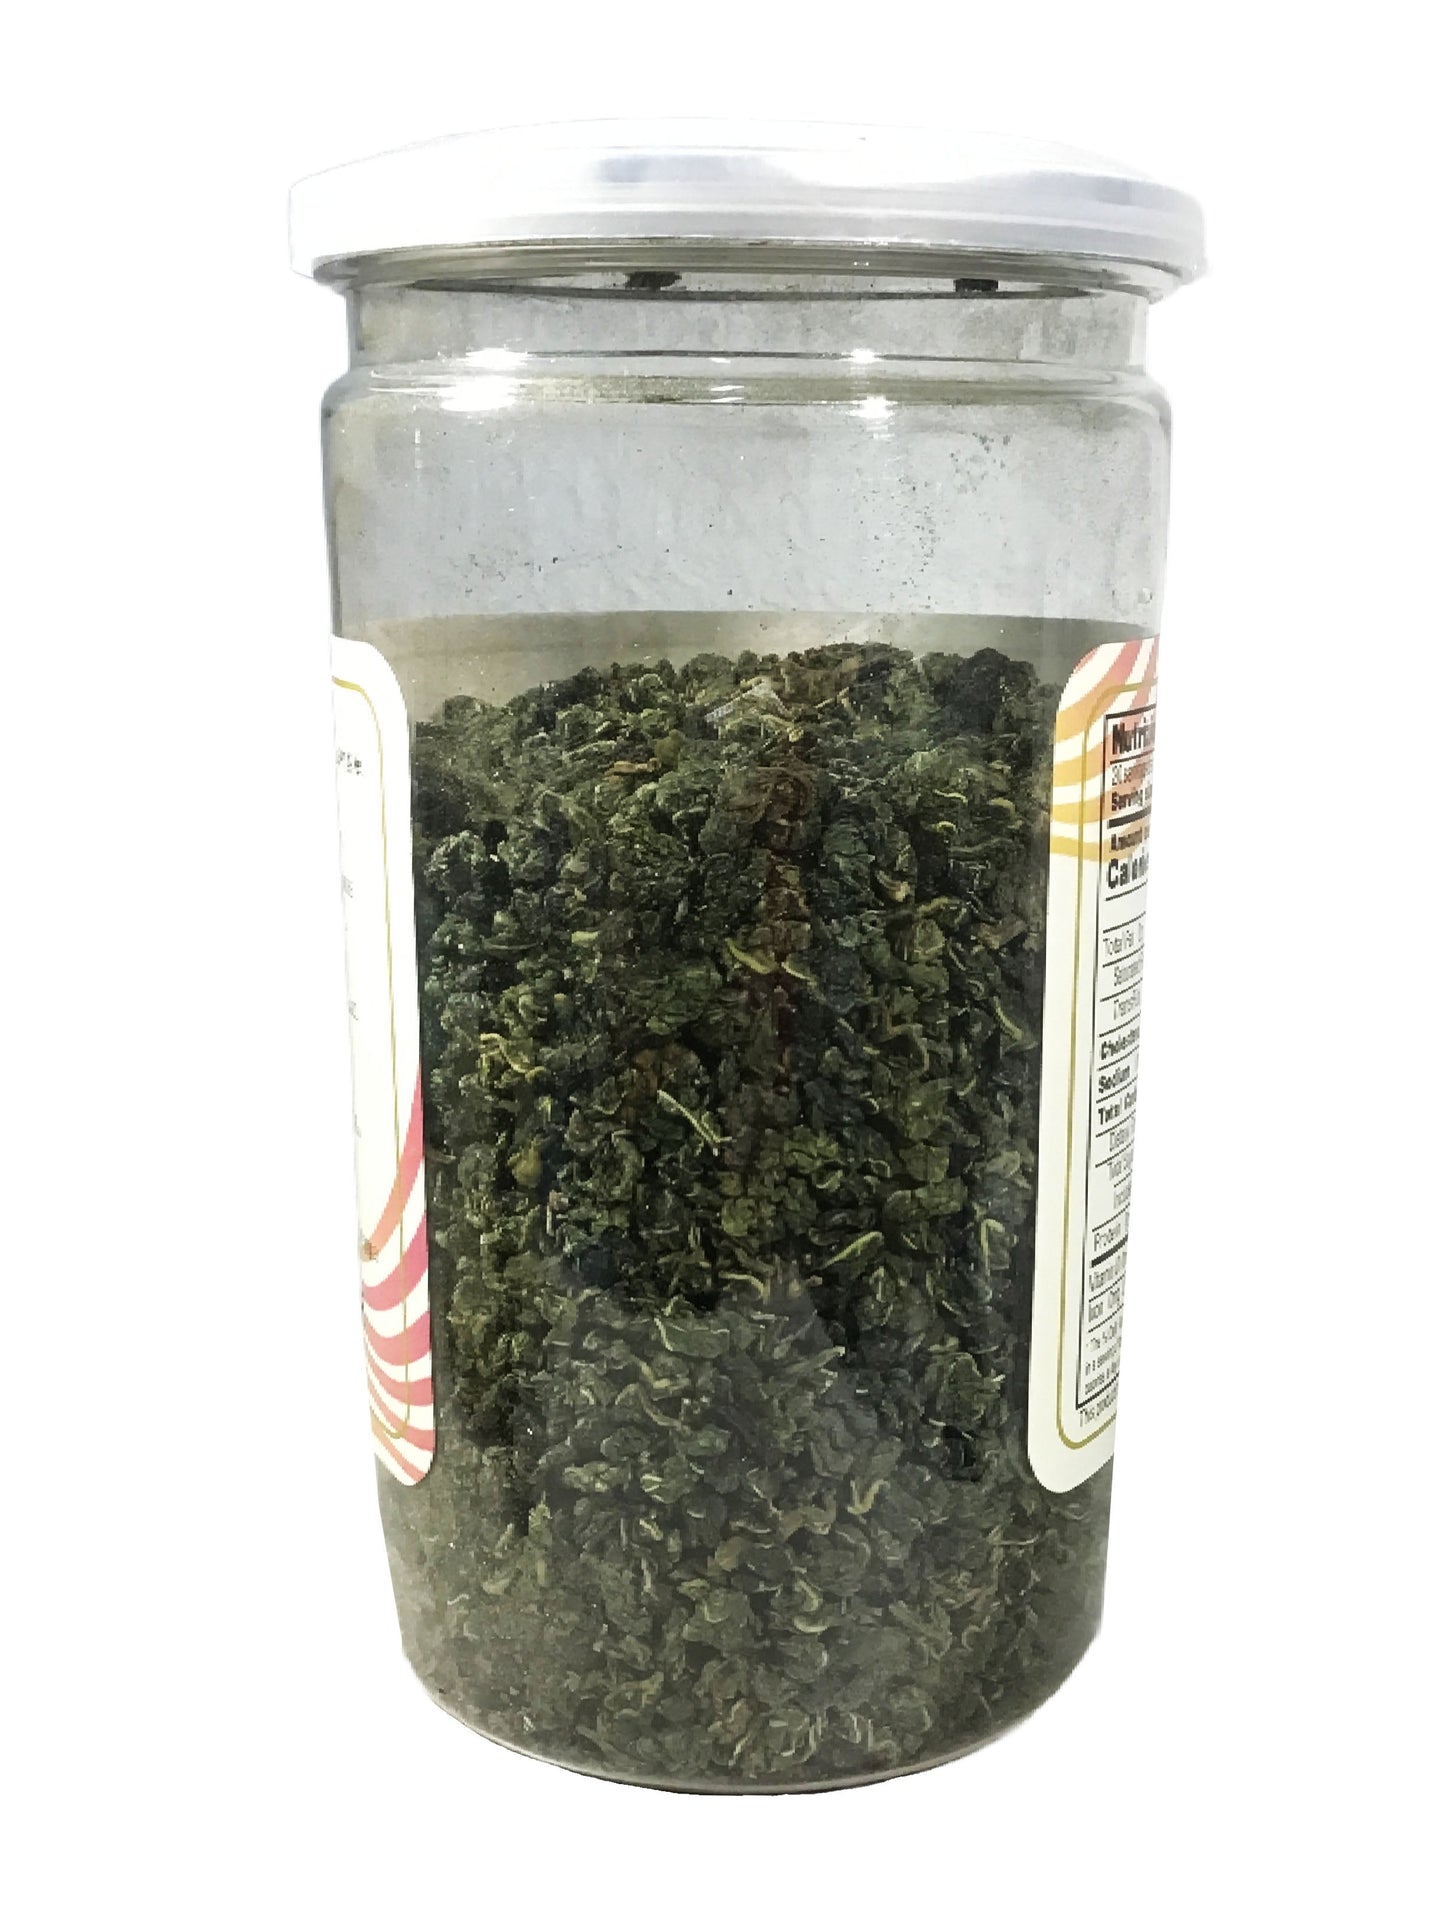 Mulberry Leaf Tea (Folium Mori) - 桑叶茶